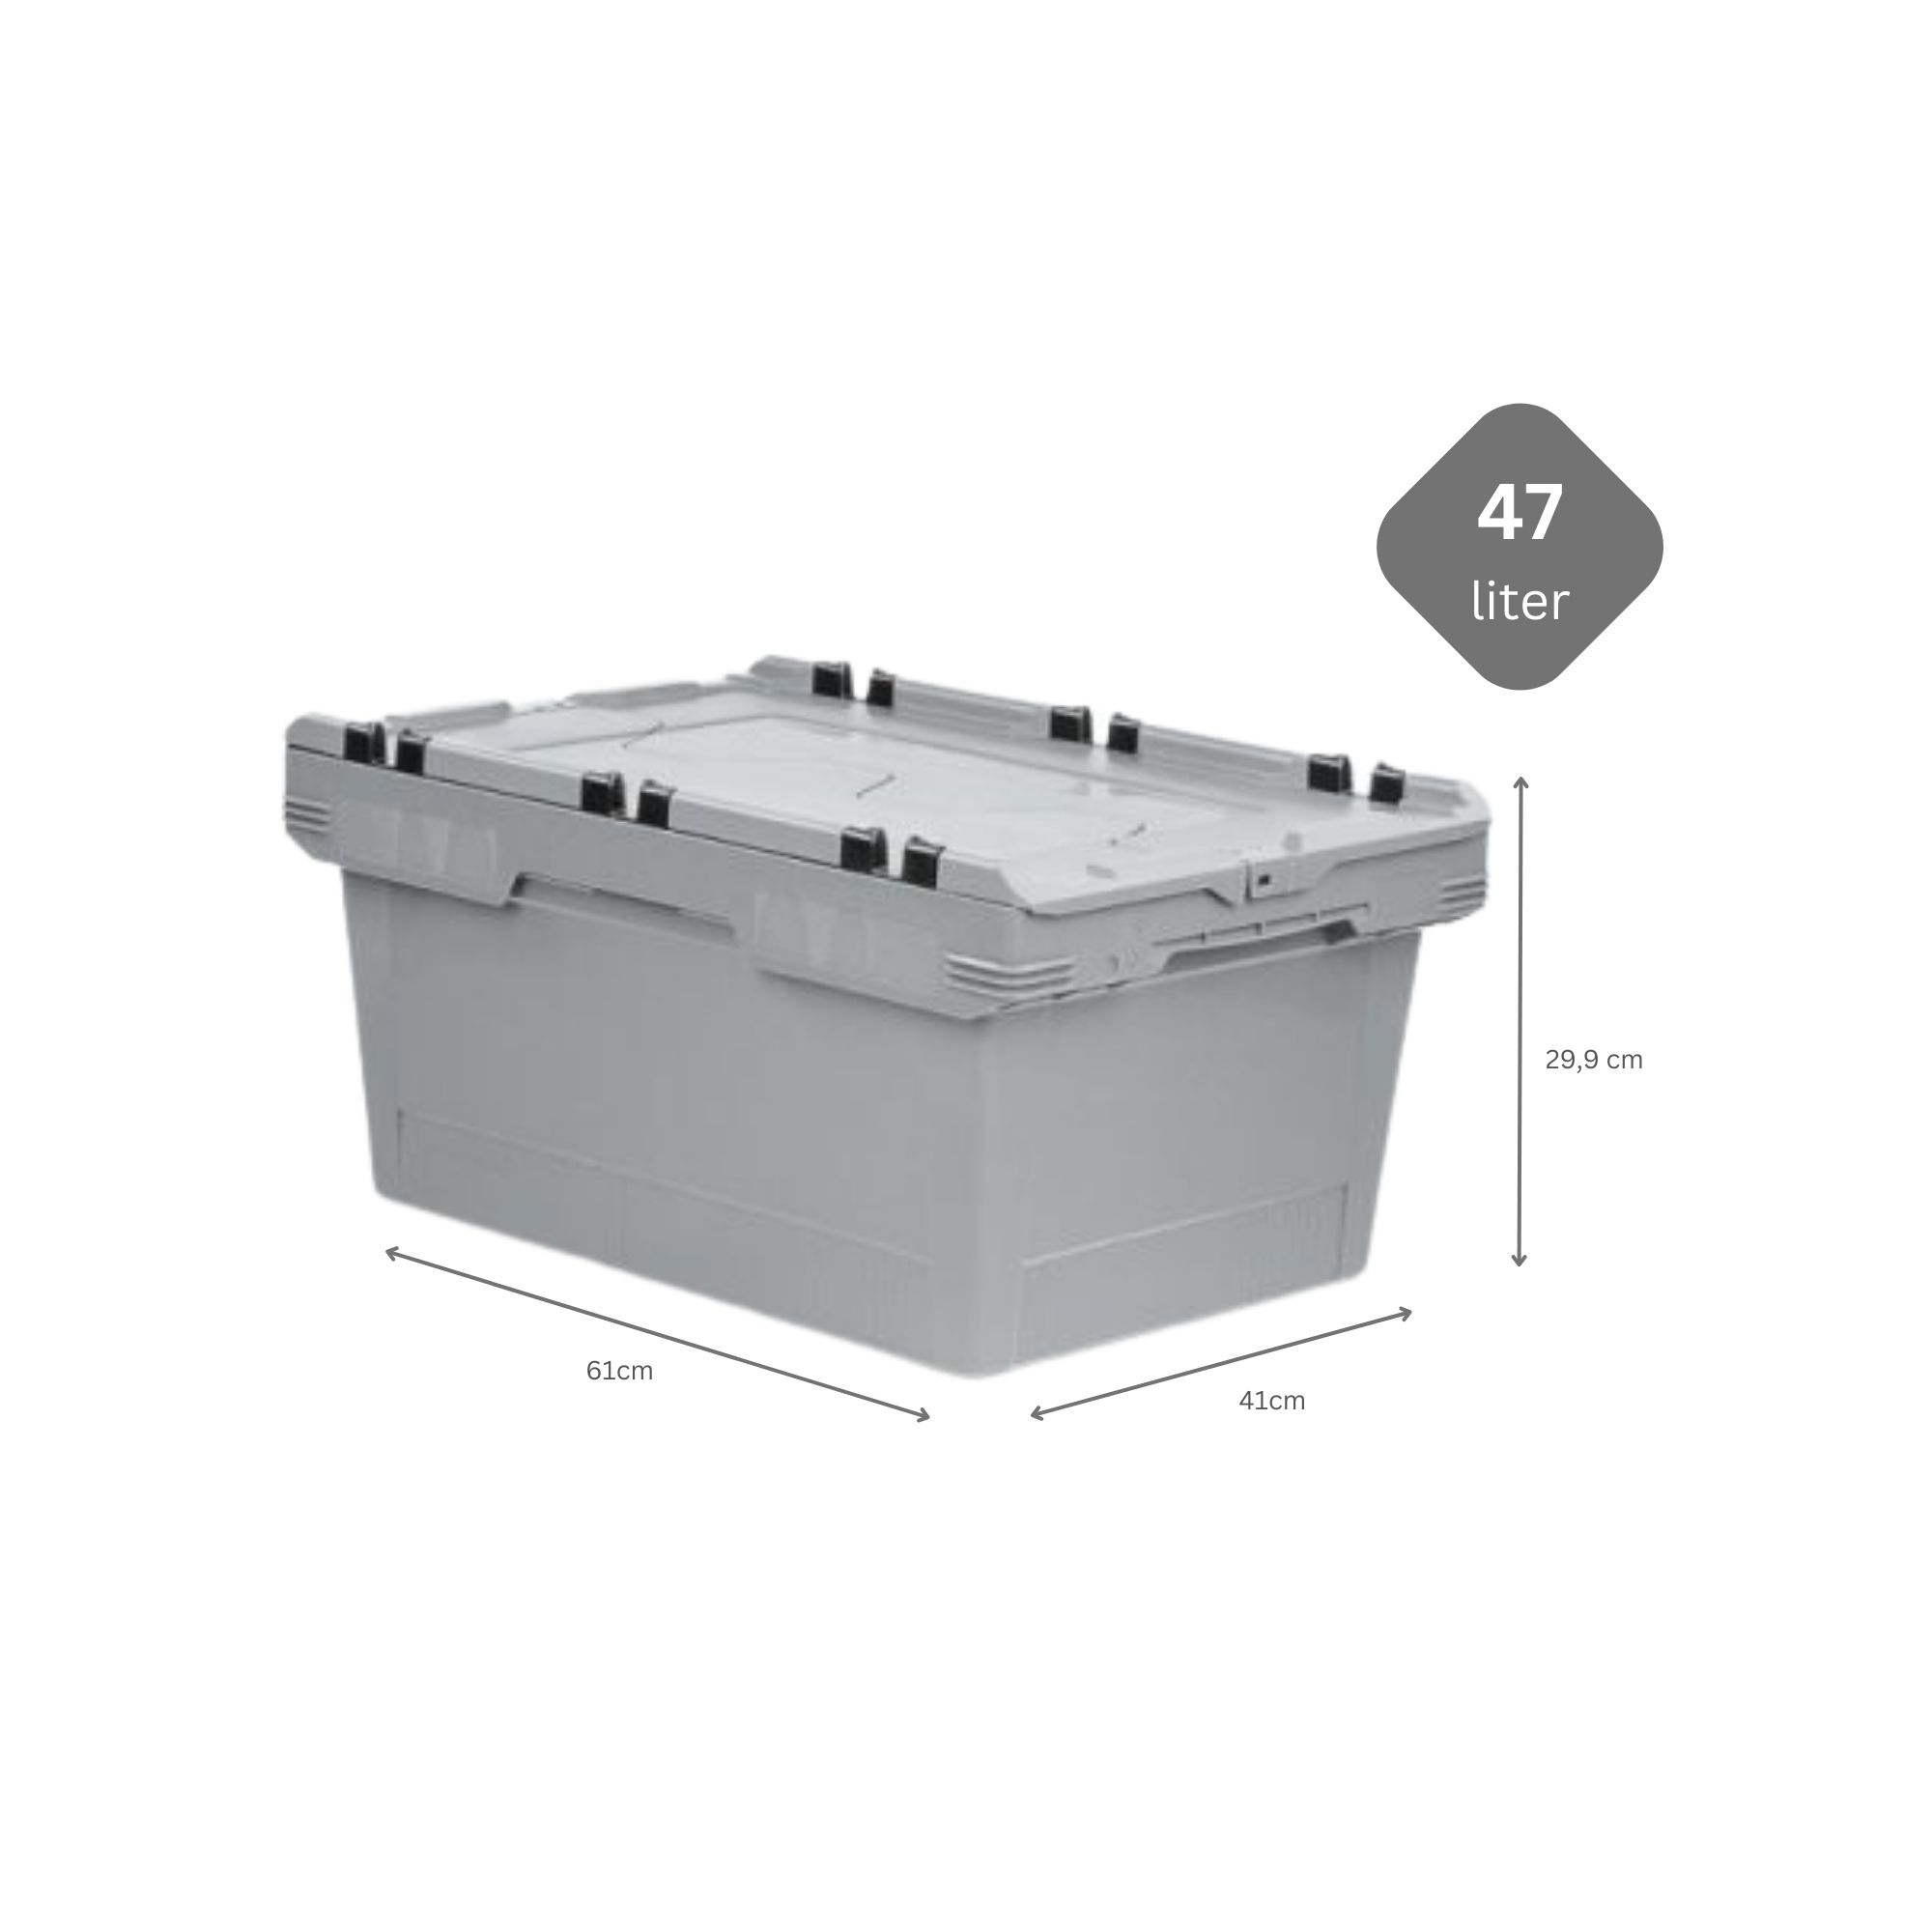 SparSet 10x Conical Mehrweg-Stapelbehälter mit Krokodildeckel Grau | HxBxT 29,9x41x61cm | 47 Liter | Lagerbox Eurobox Transportbox Transportbehälter Stapelbehälter